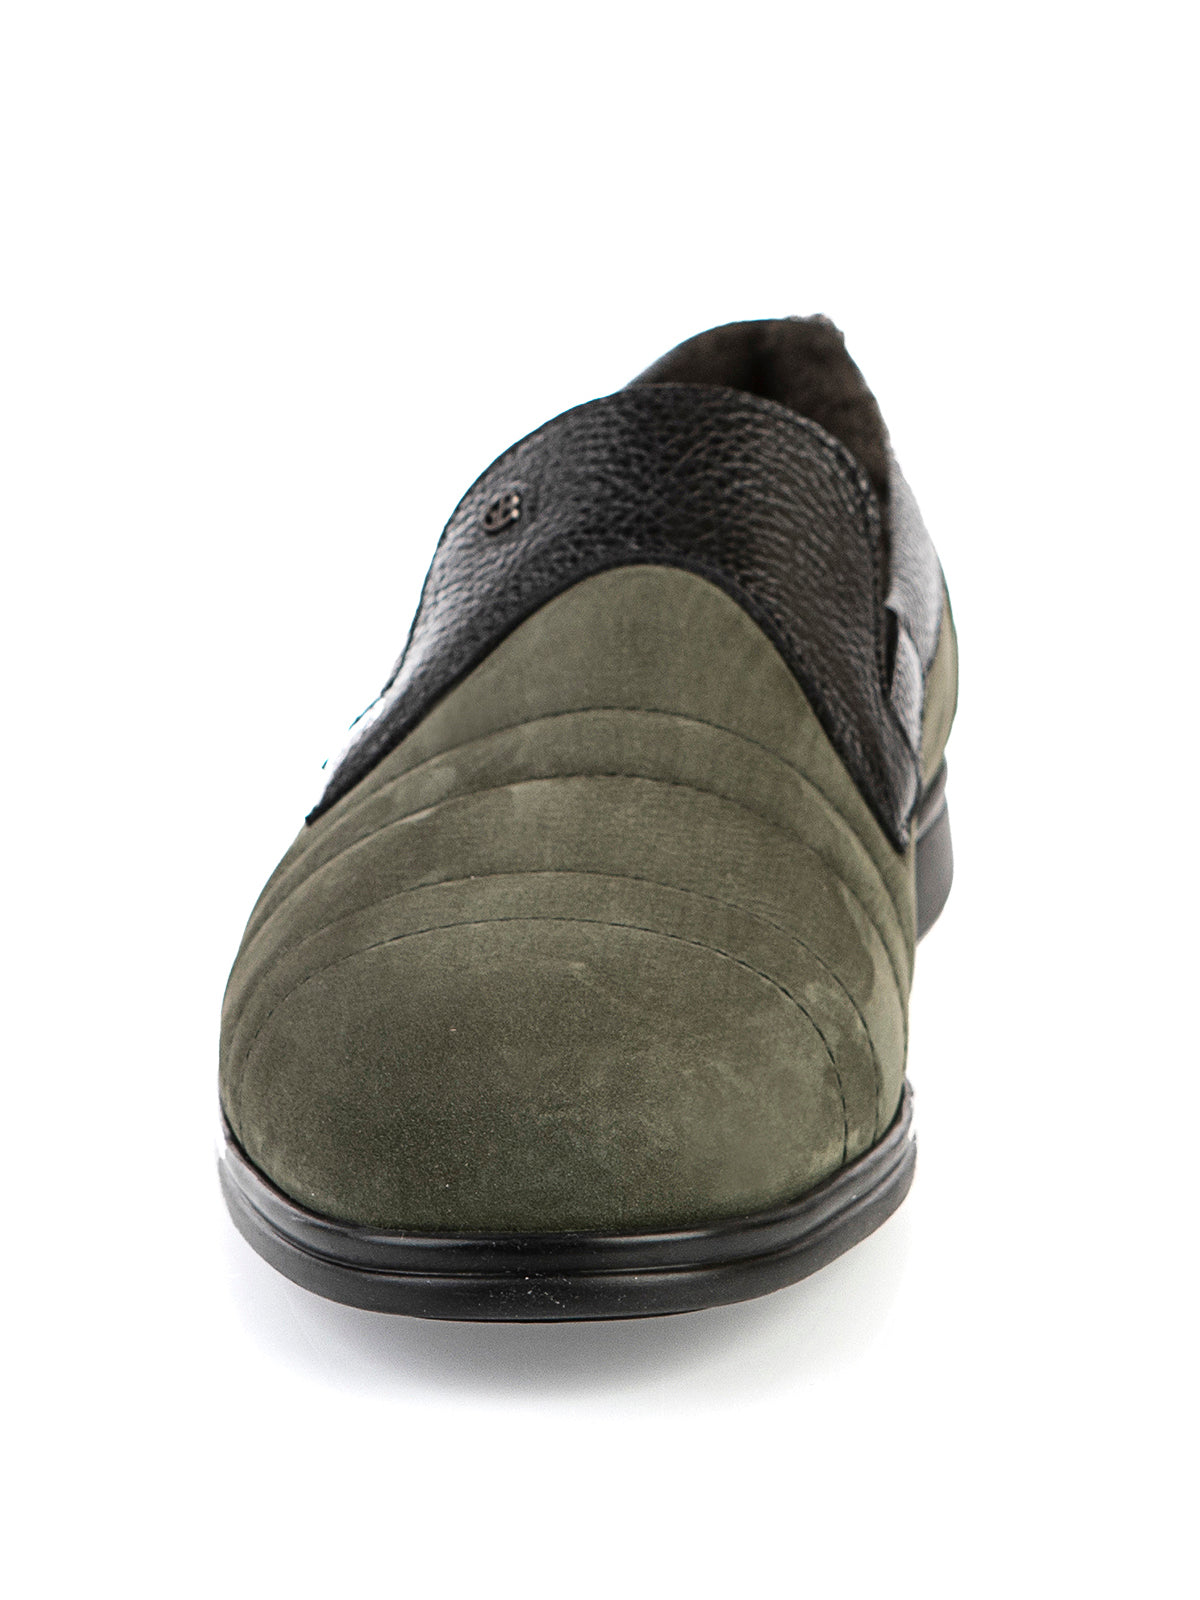 8700 Gianfranco Butteri Shoes / Green